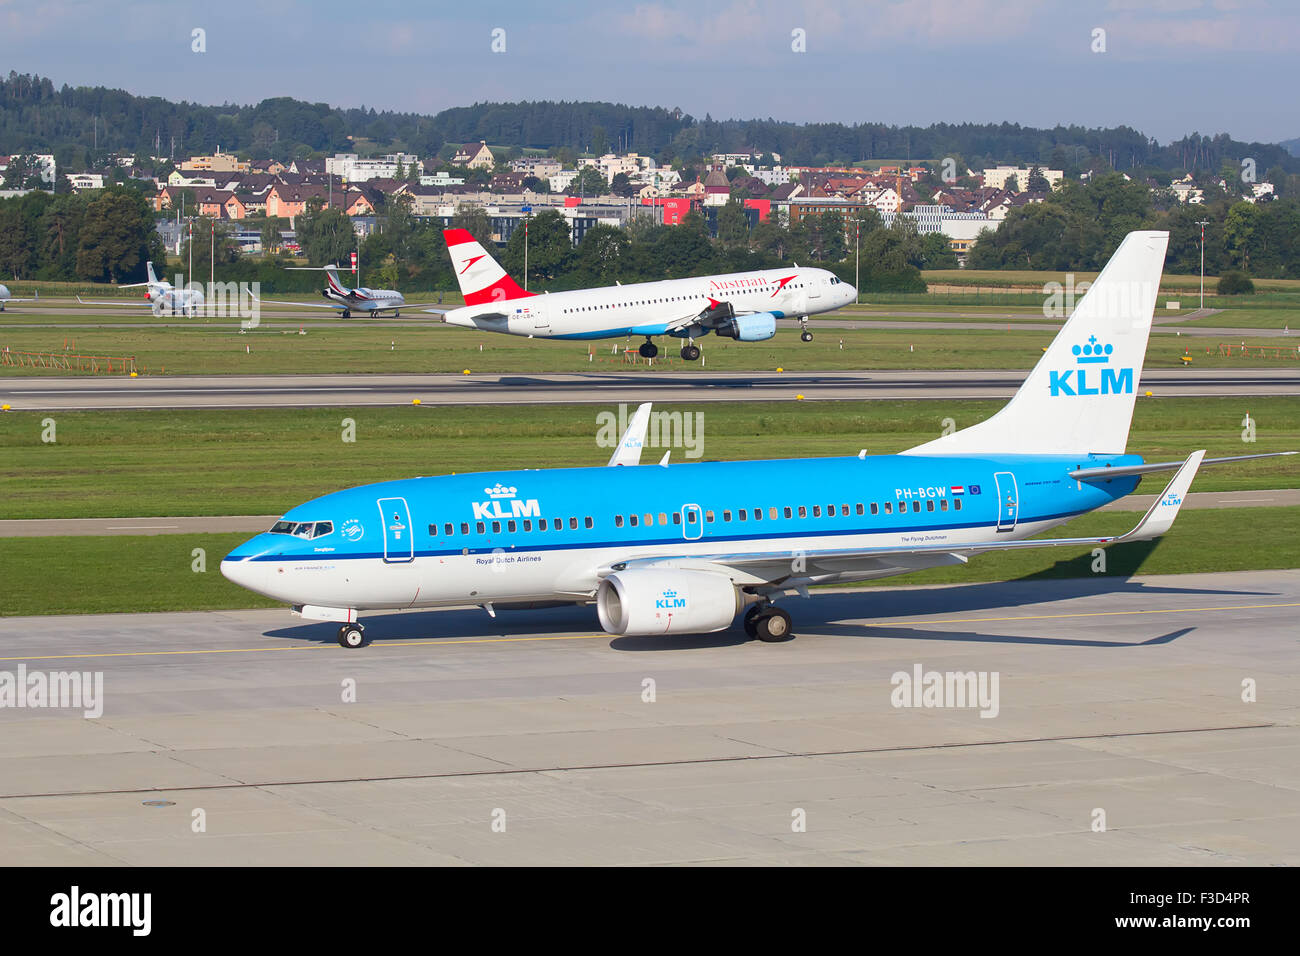 ZURICH - JULY 18: Boeing-737 KLM taxing in Zurich after short haul flight on July 18, 2015 in Zurich, Switzerland. Zurich airpor Stock Photo